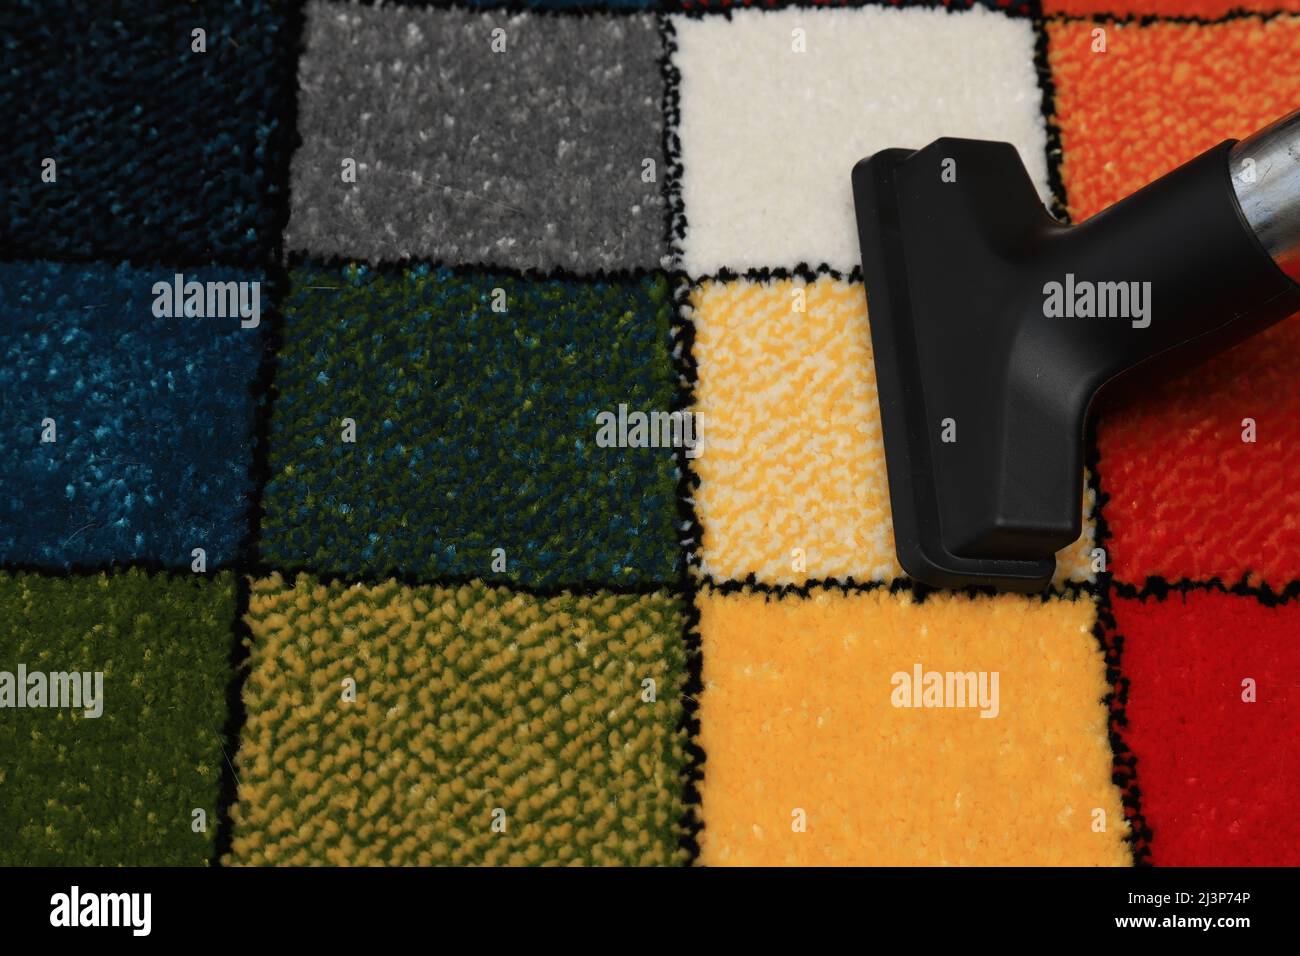 Saugen eines weichen Teppichs mit einem Muster aus farbigen Quadraten. Flauschiger Teppich, Innenelement, Bodenbelag wird vakuumgereinigt Stockfoto